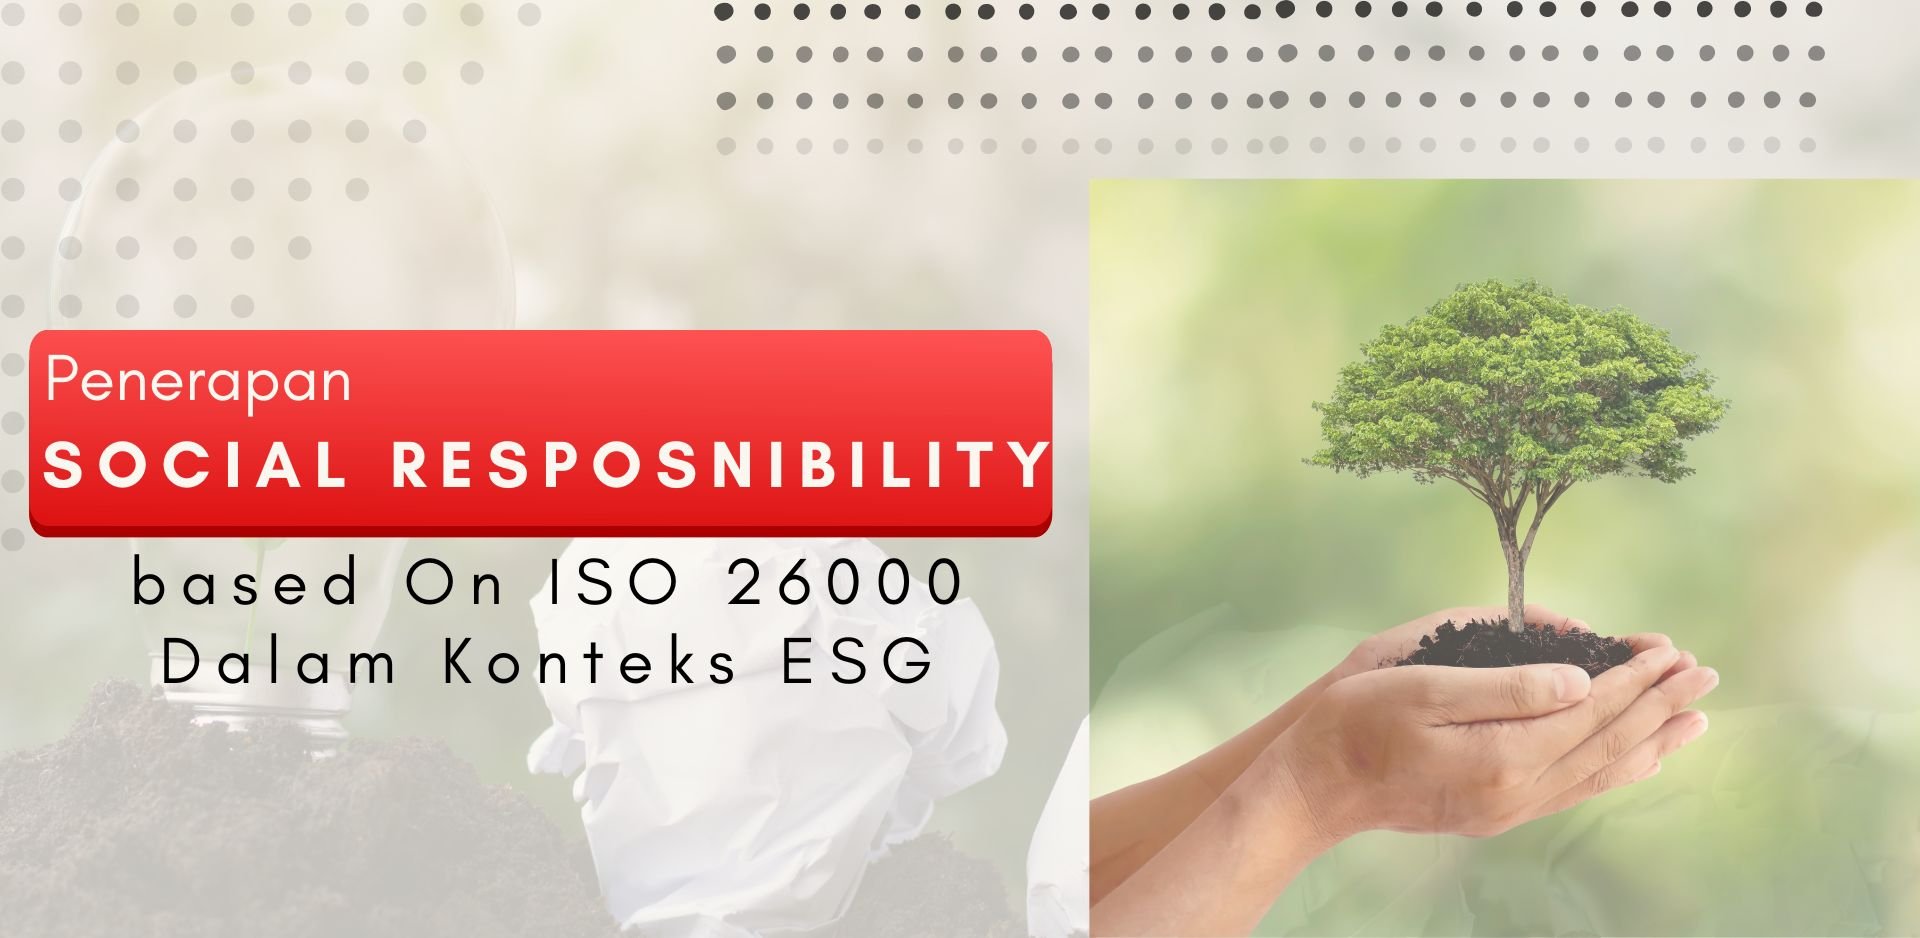 Penerapan Sosial Responsibility based in ISO 26000 Dalam Konteks ESG